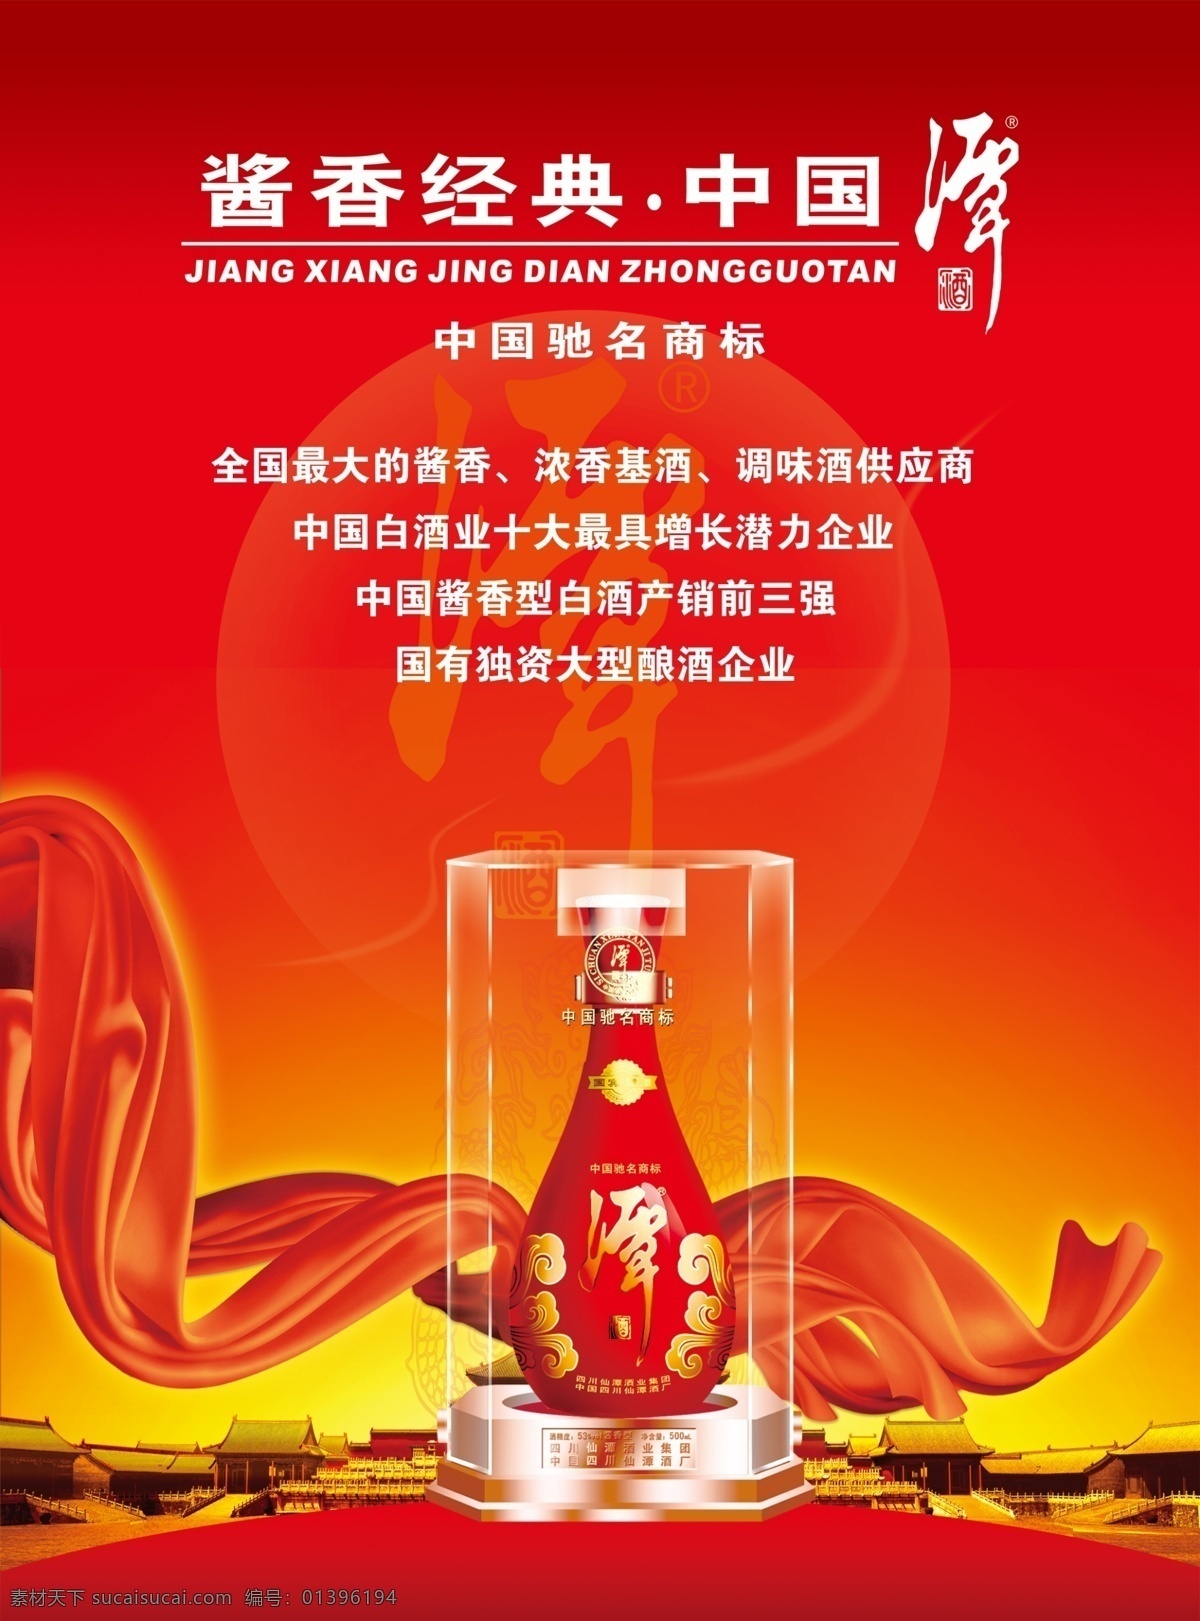 酒文化 酒 彩带 光晕 古城 北京 红色 大气 谭酒 高端酒 酒盒 酒瓶 广告设计模板 源文件